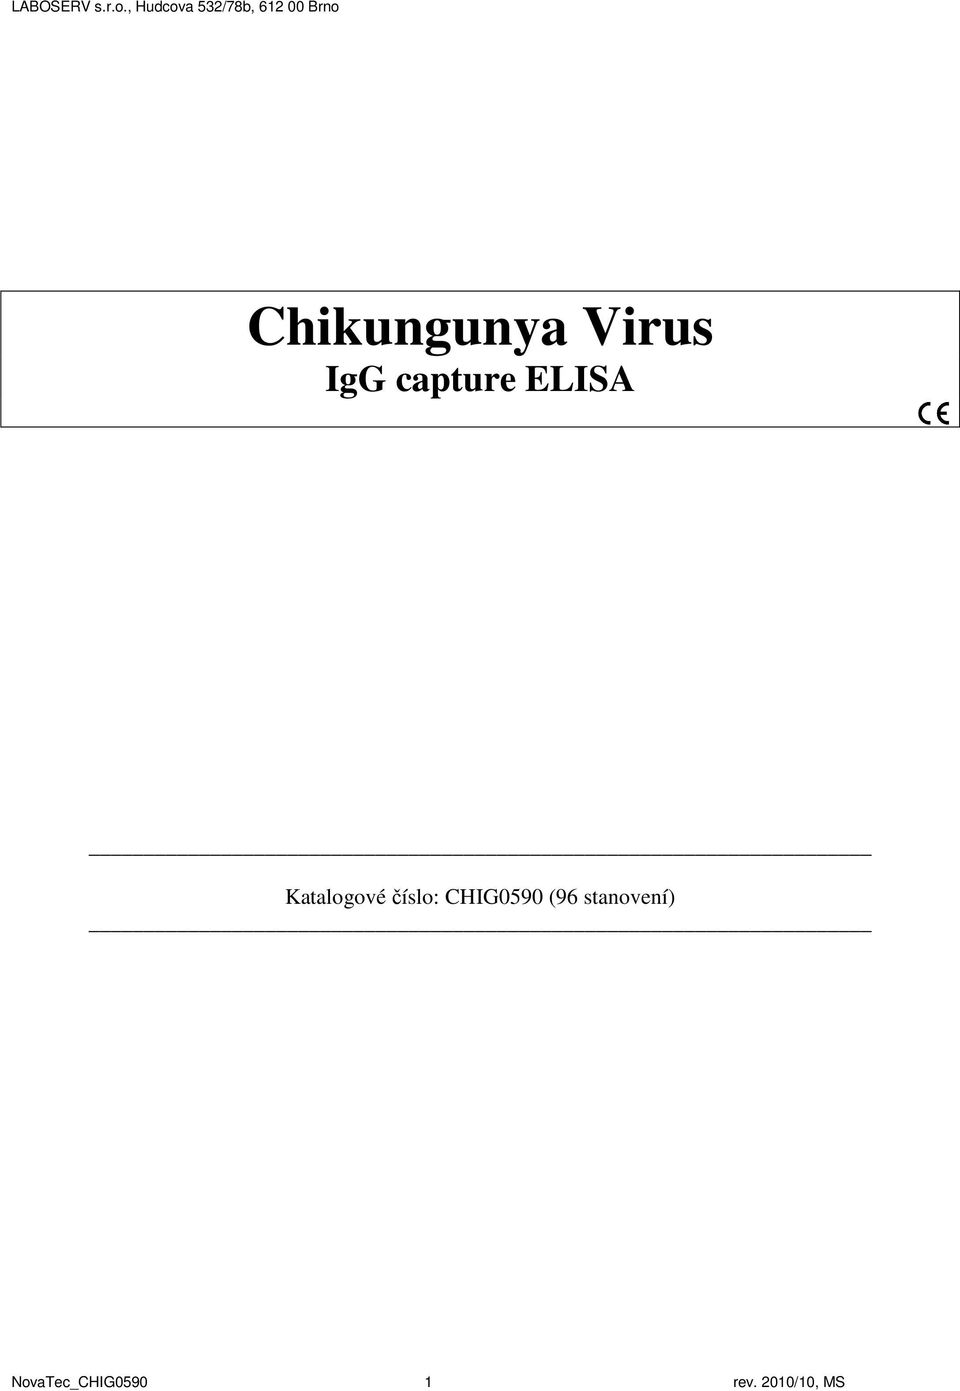 Chikungunya Virus IgG capture